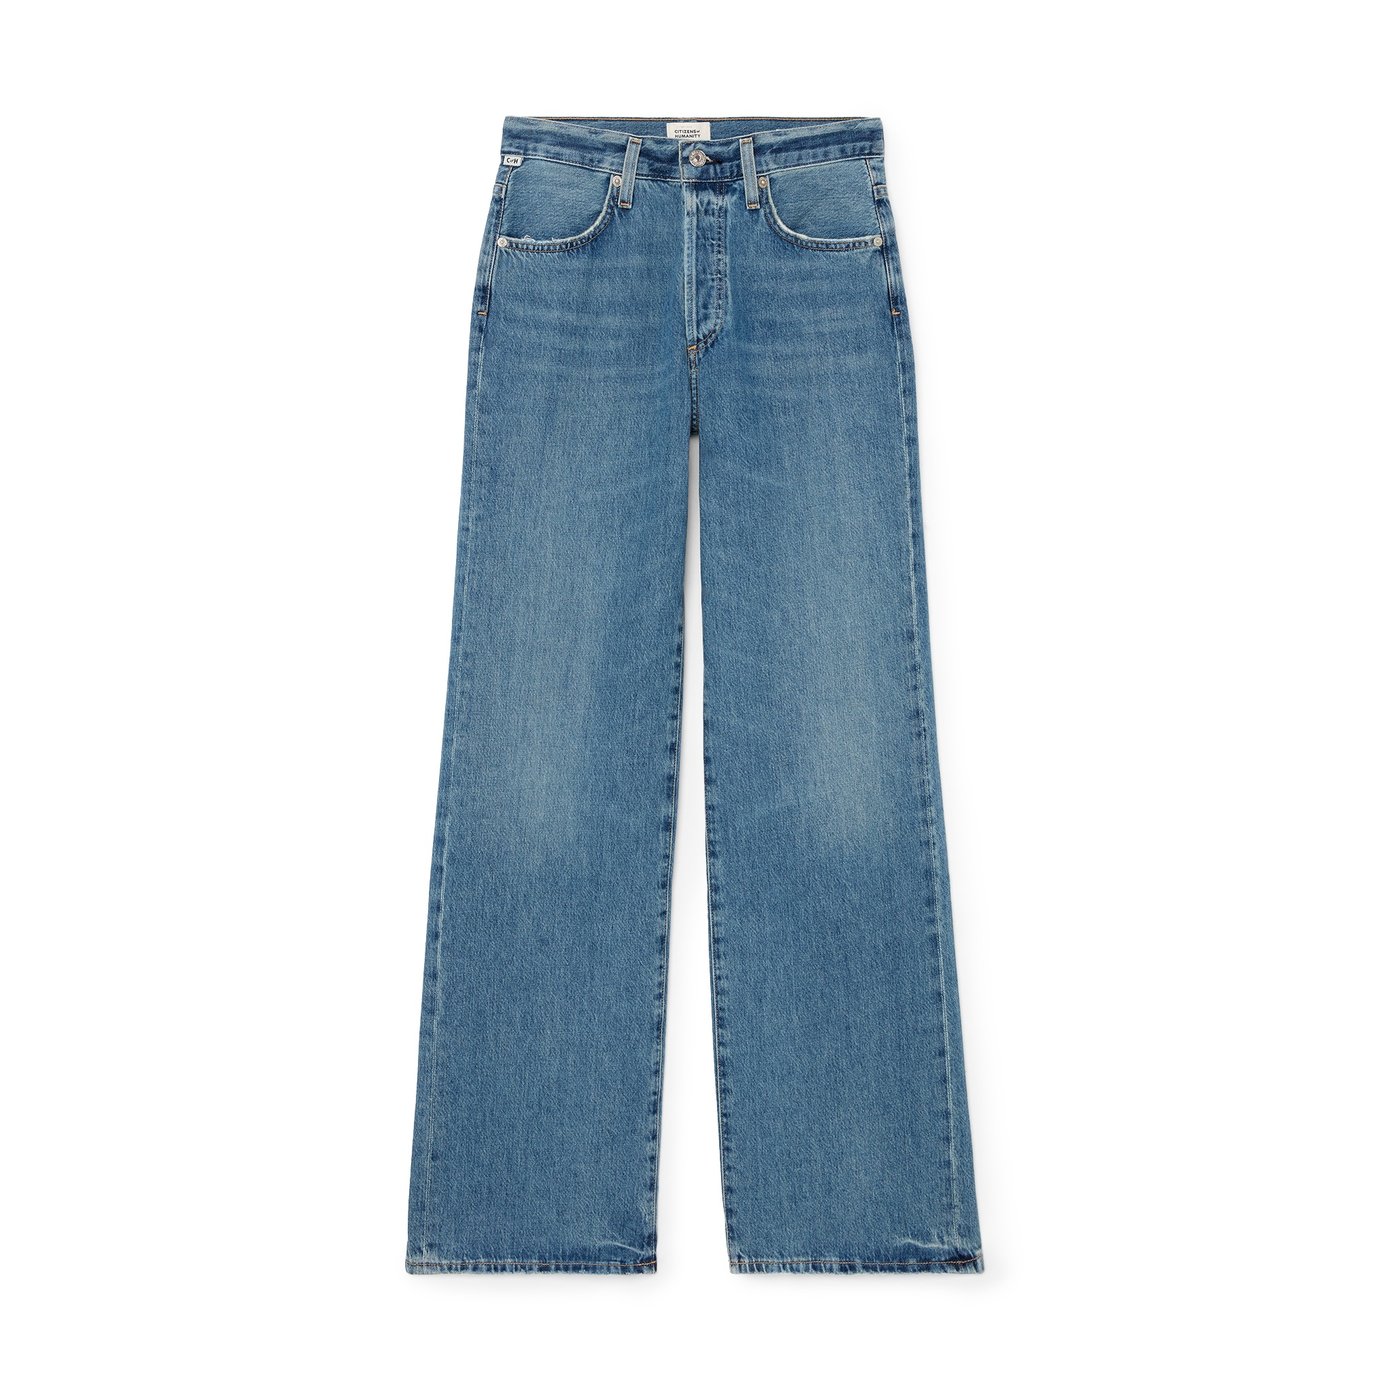 The Jeans I'll Be Living In All Summer Long — Arteresa Lynn